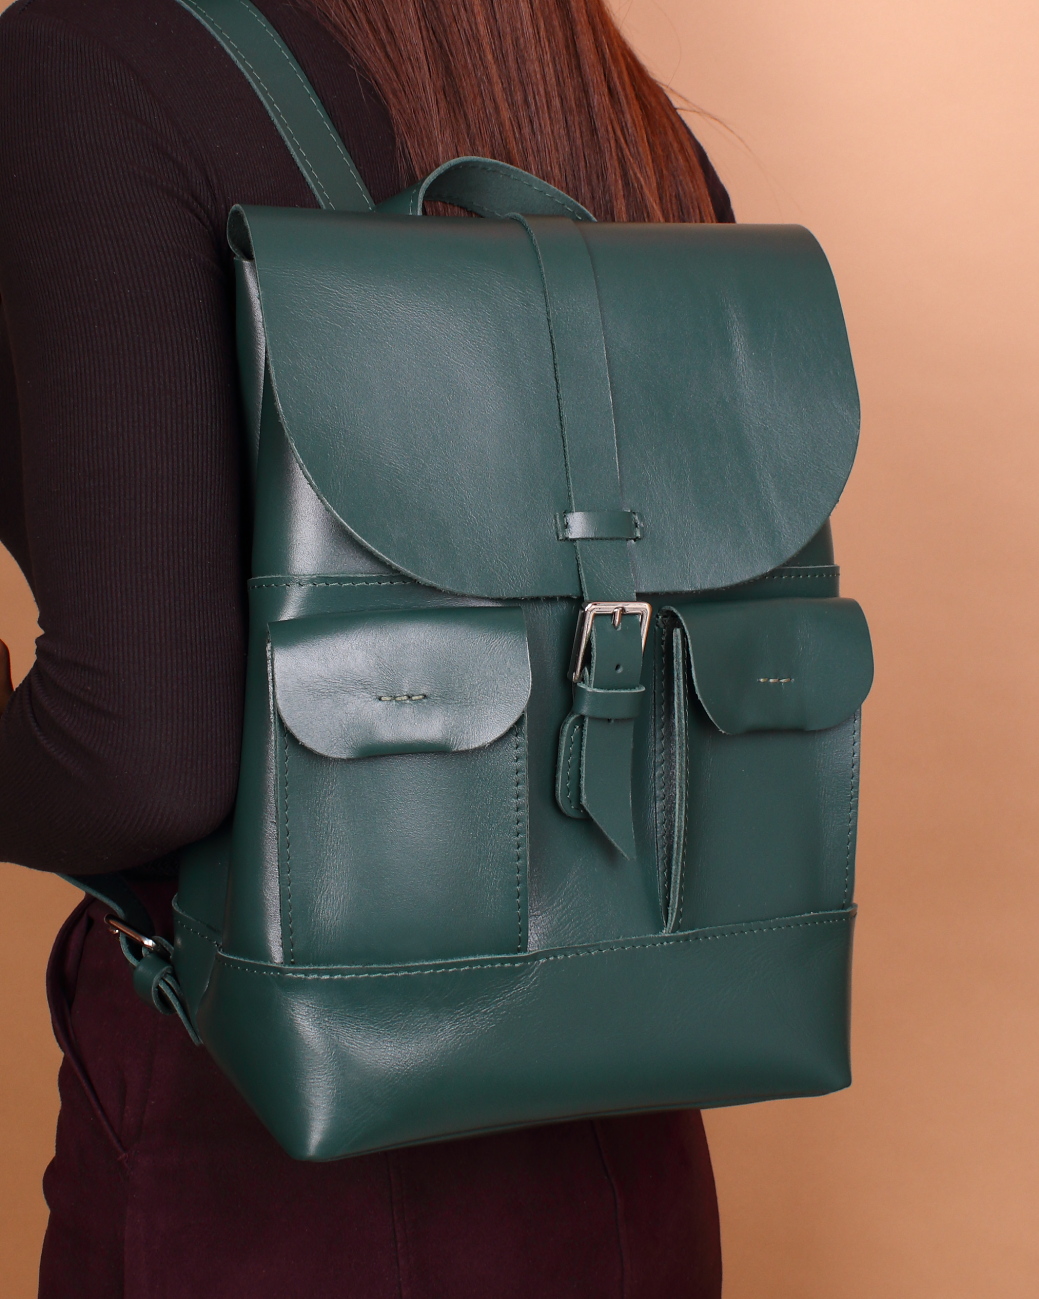 Женский рюкзак из натуральной кожи зеленый B010 emerald